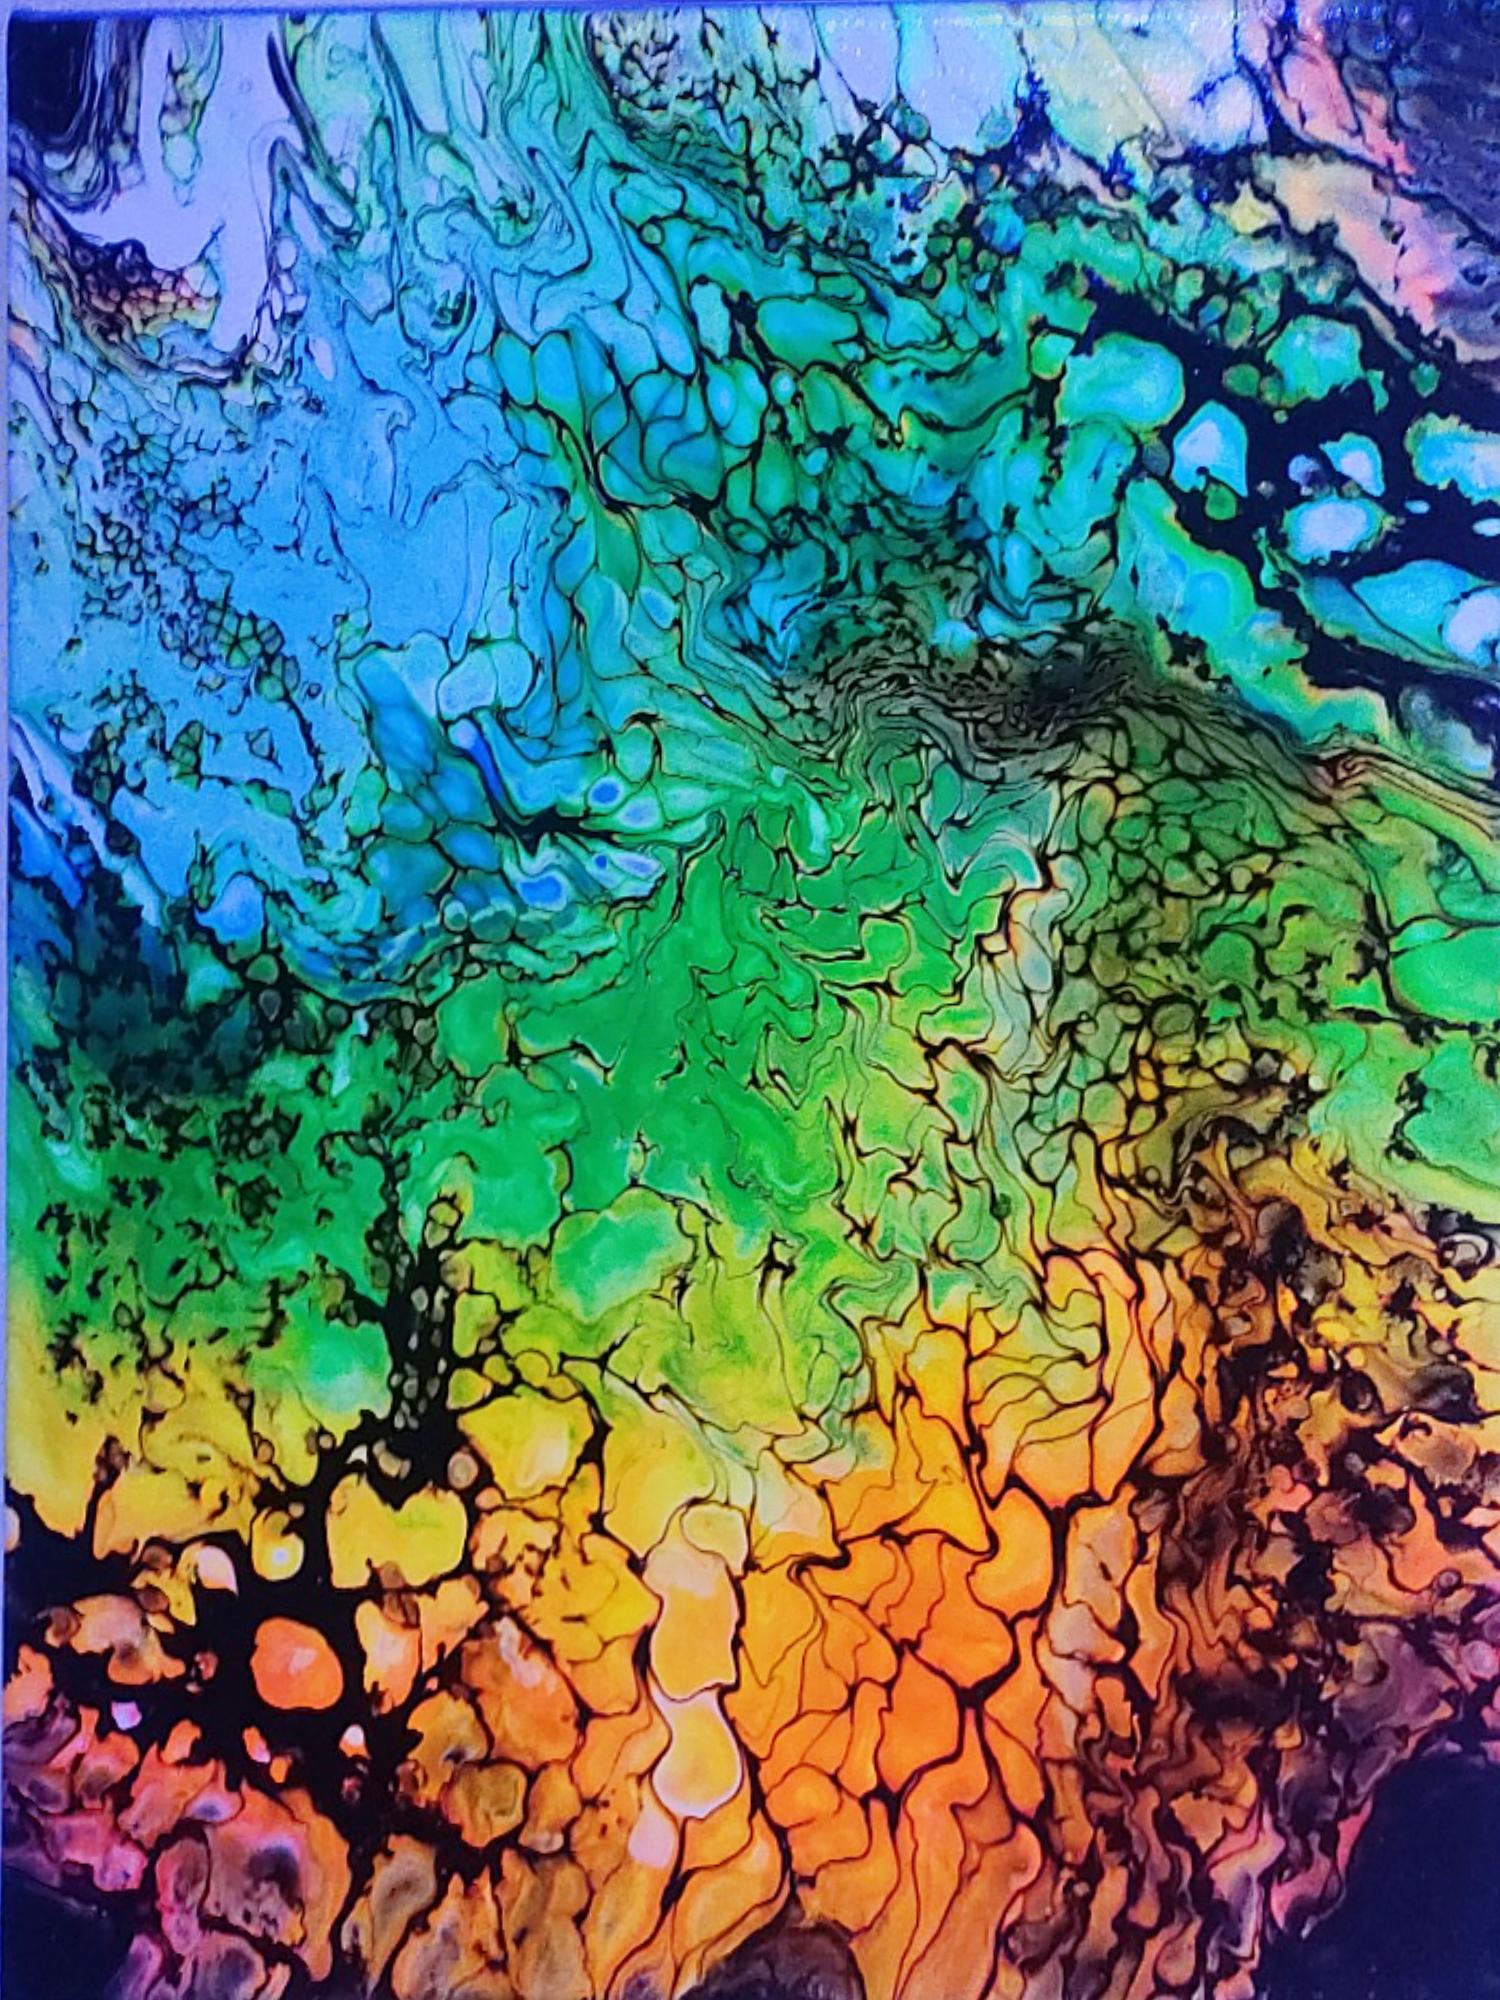 Fluid colors by Chris